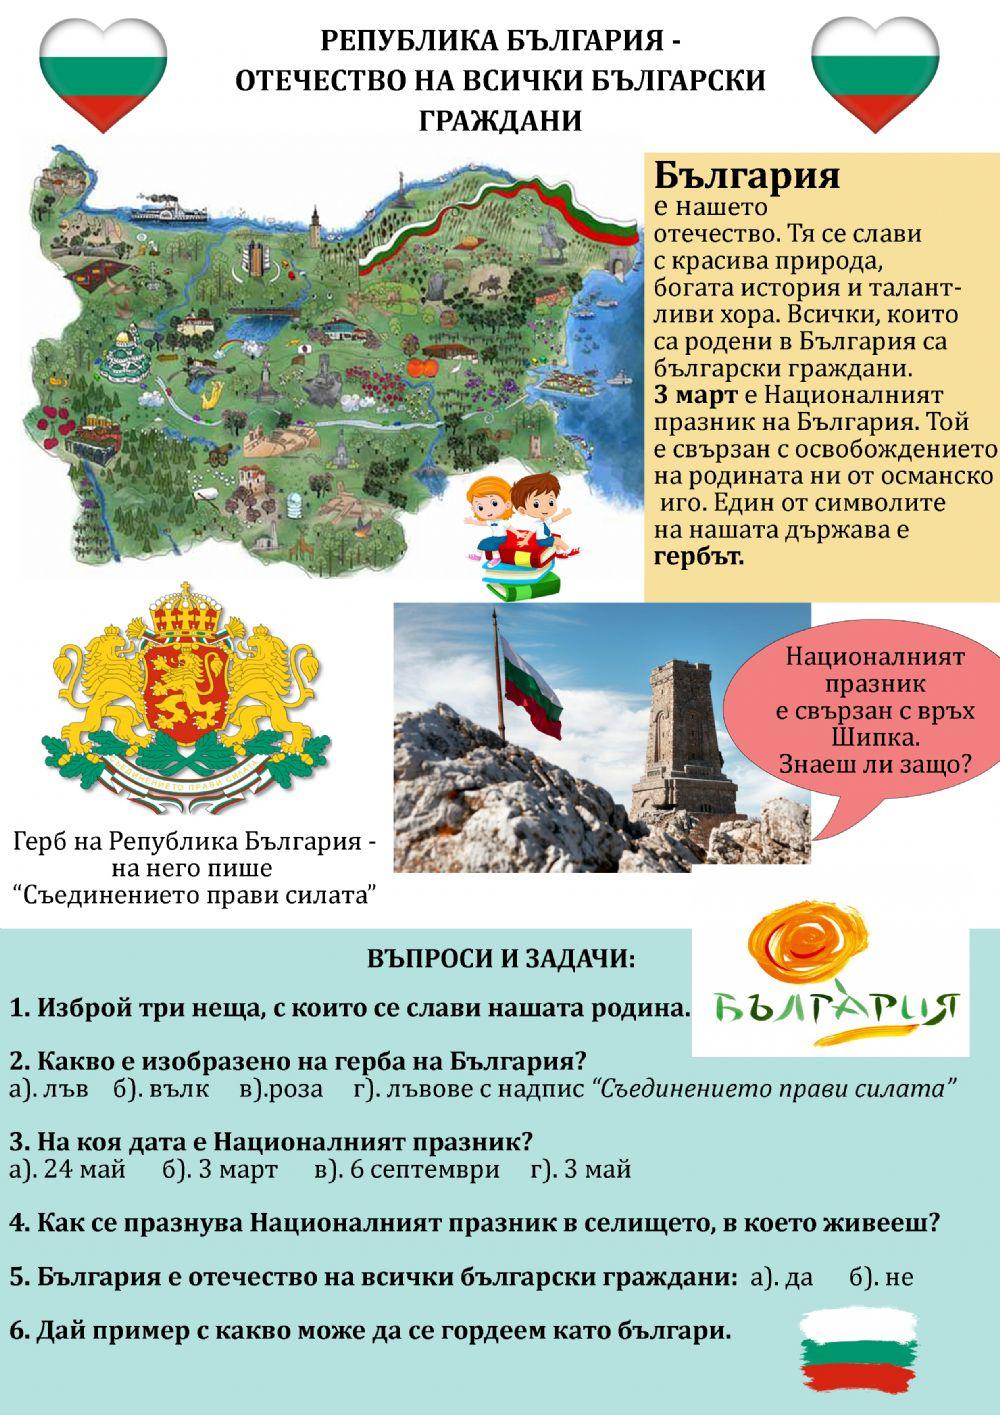 България - Отечество на всички български граждани